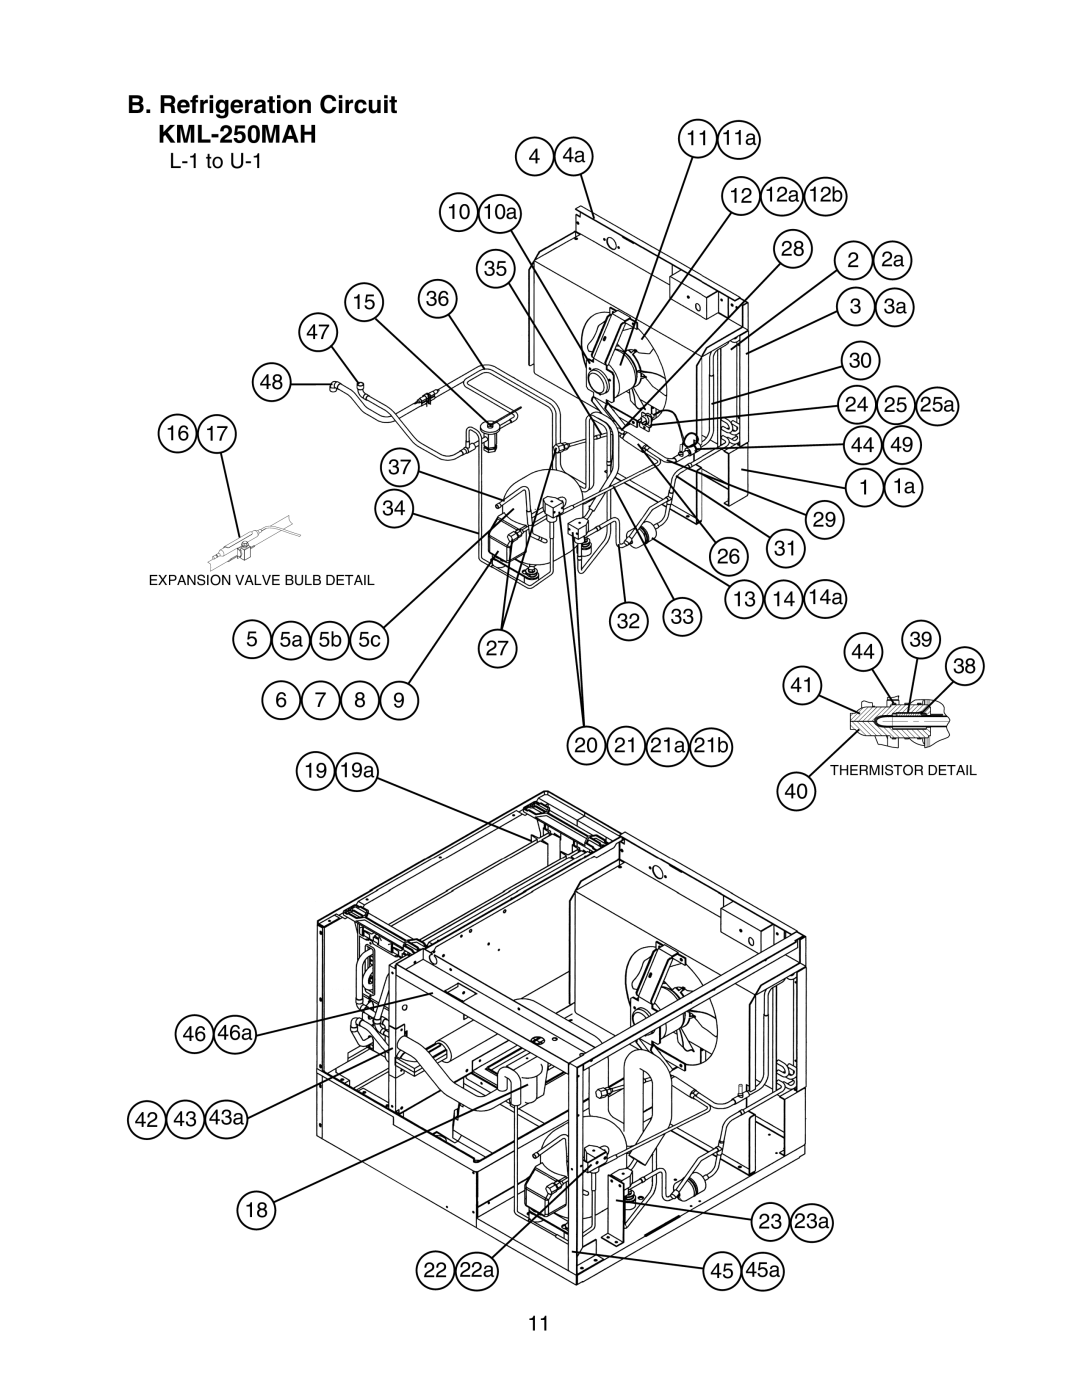 Hoshizaki manual B. Refrigeration Circuit KML-250MAH 